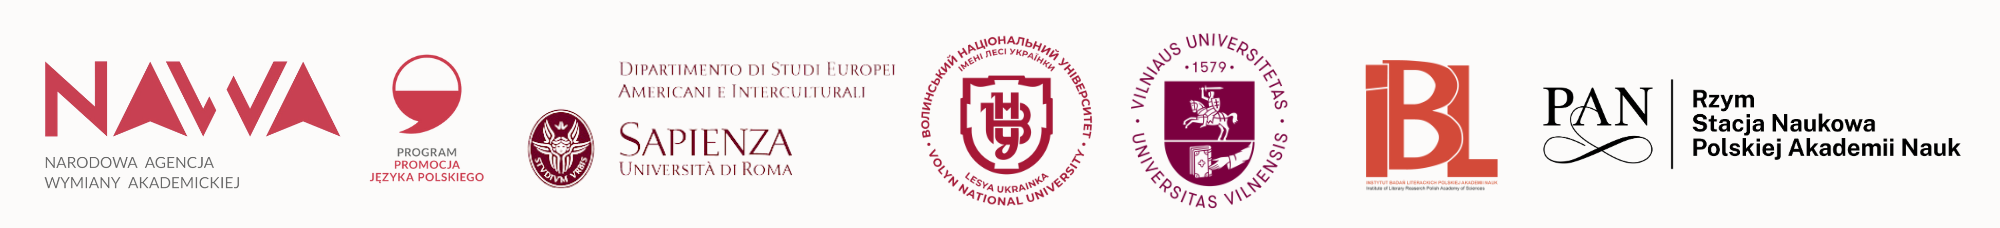 Logotypy instytucji biorących udział w projecie "Kobieca strona poezji"